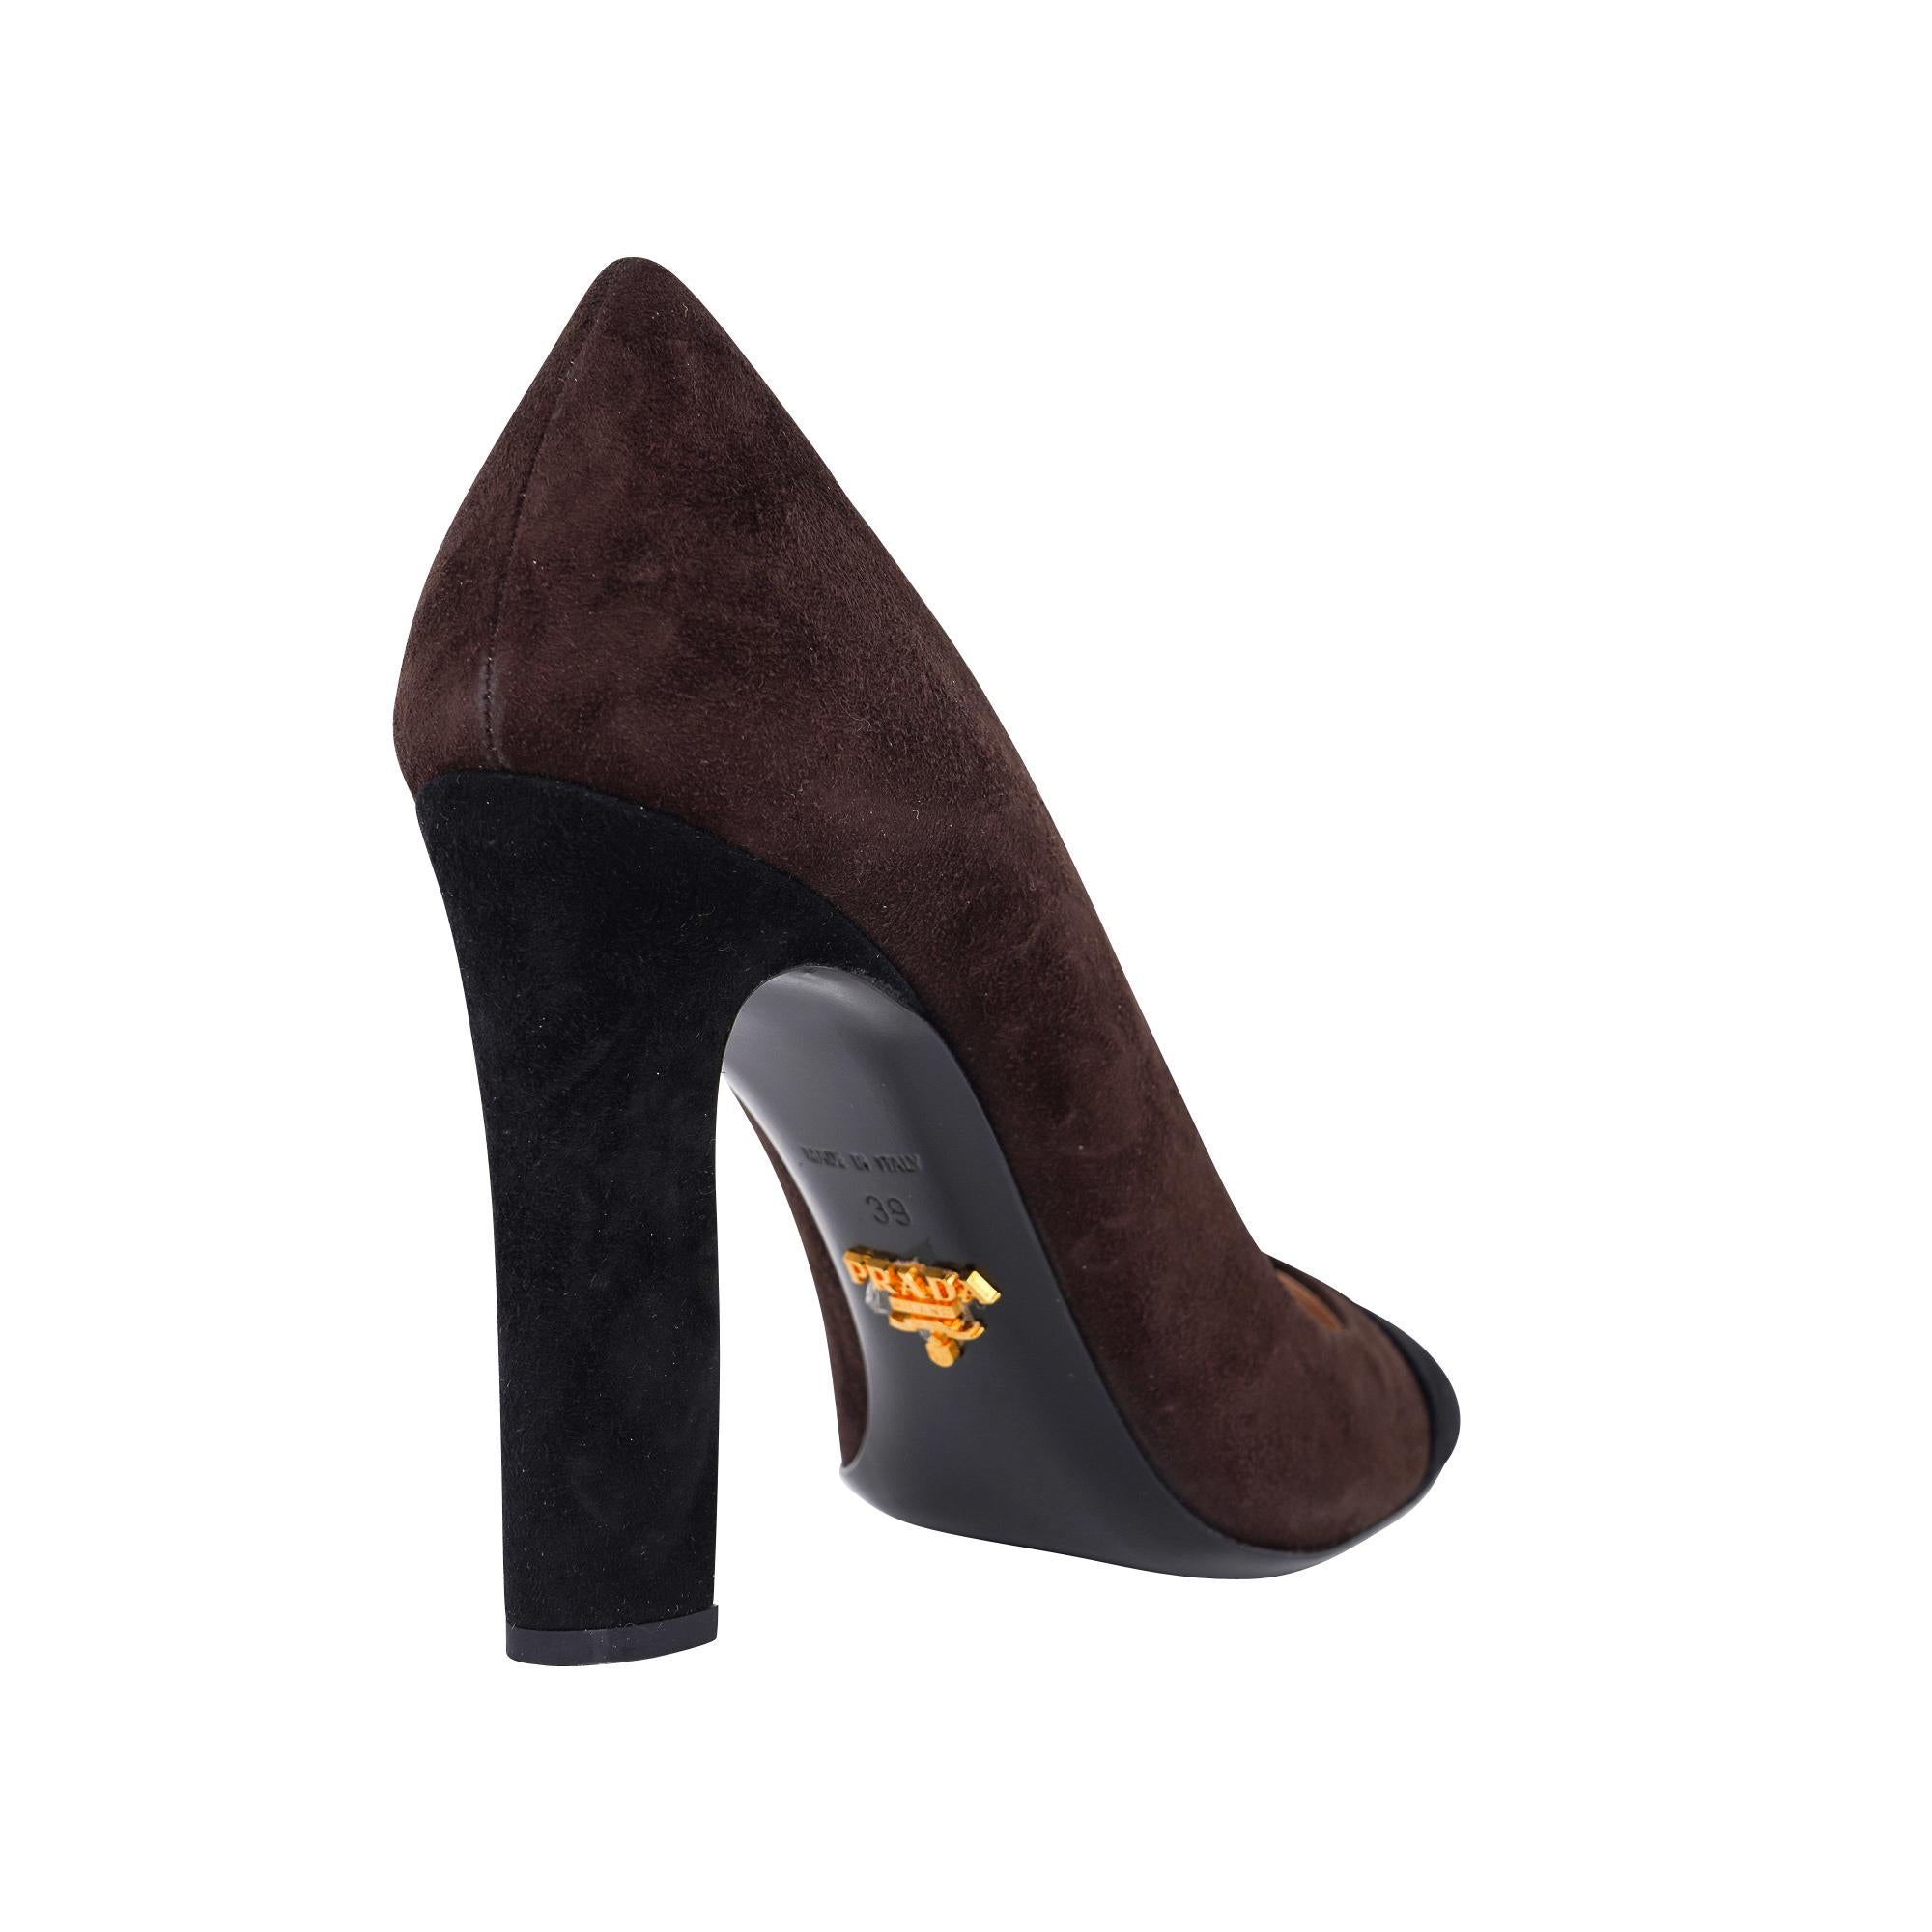 Chaussures Prada Pompe en daim marron et noir 39 / 9New Pour femmes en vente